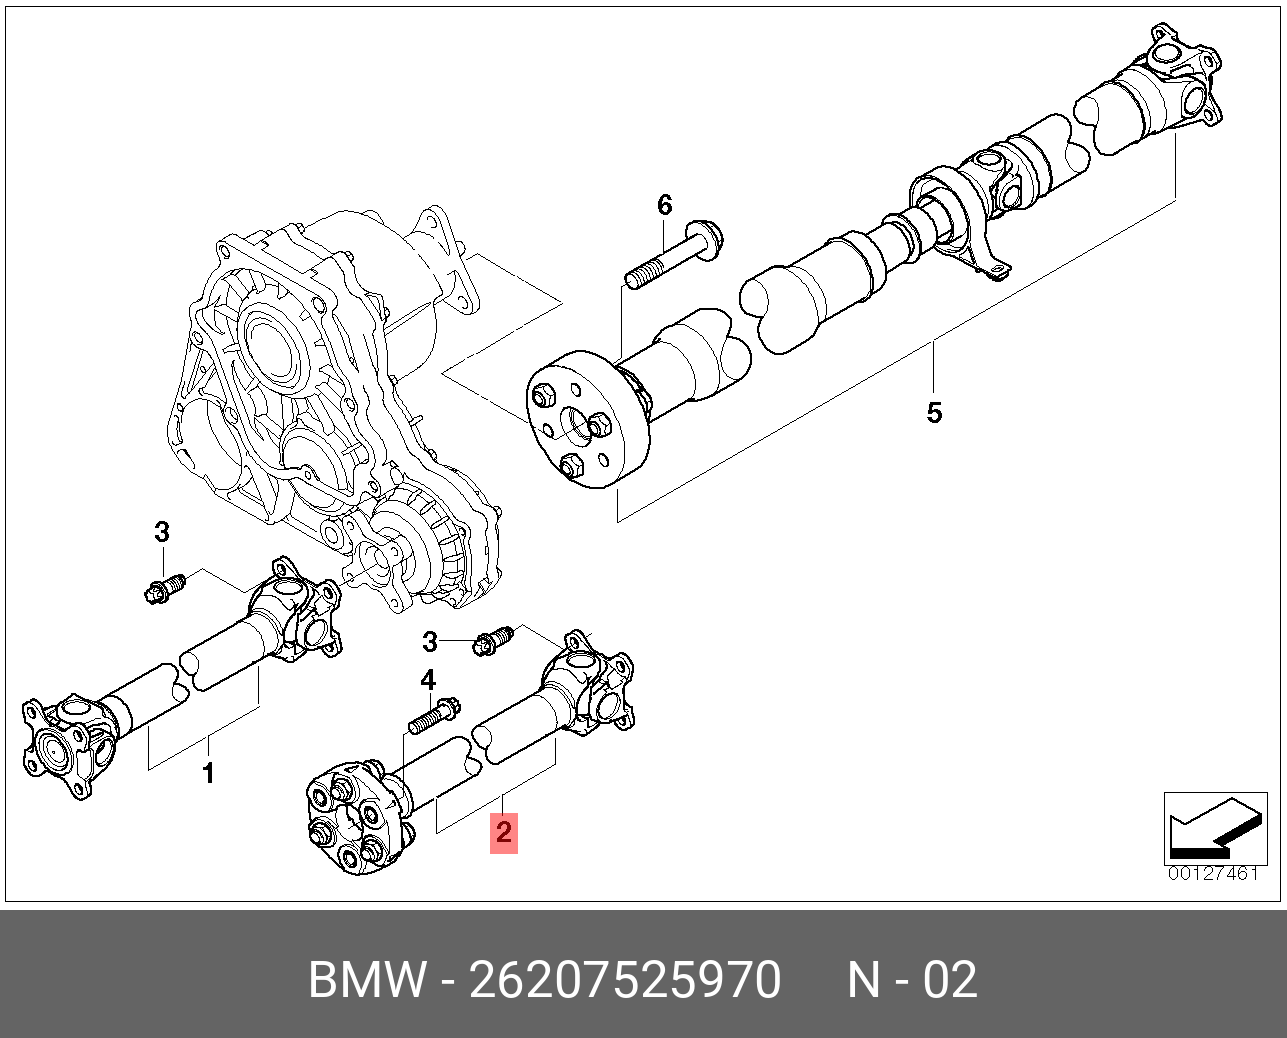 Передний приводной вал БМВ 420. Передний кардан e46. Кардан BMW e46. Кардан схема на БМВ f10. Коленвал пд 10